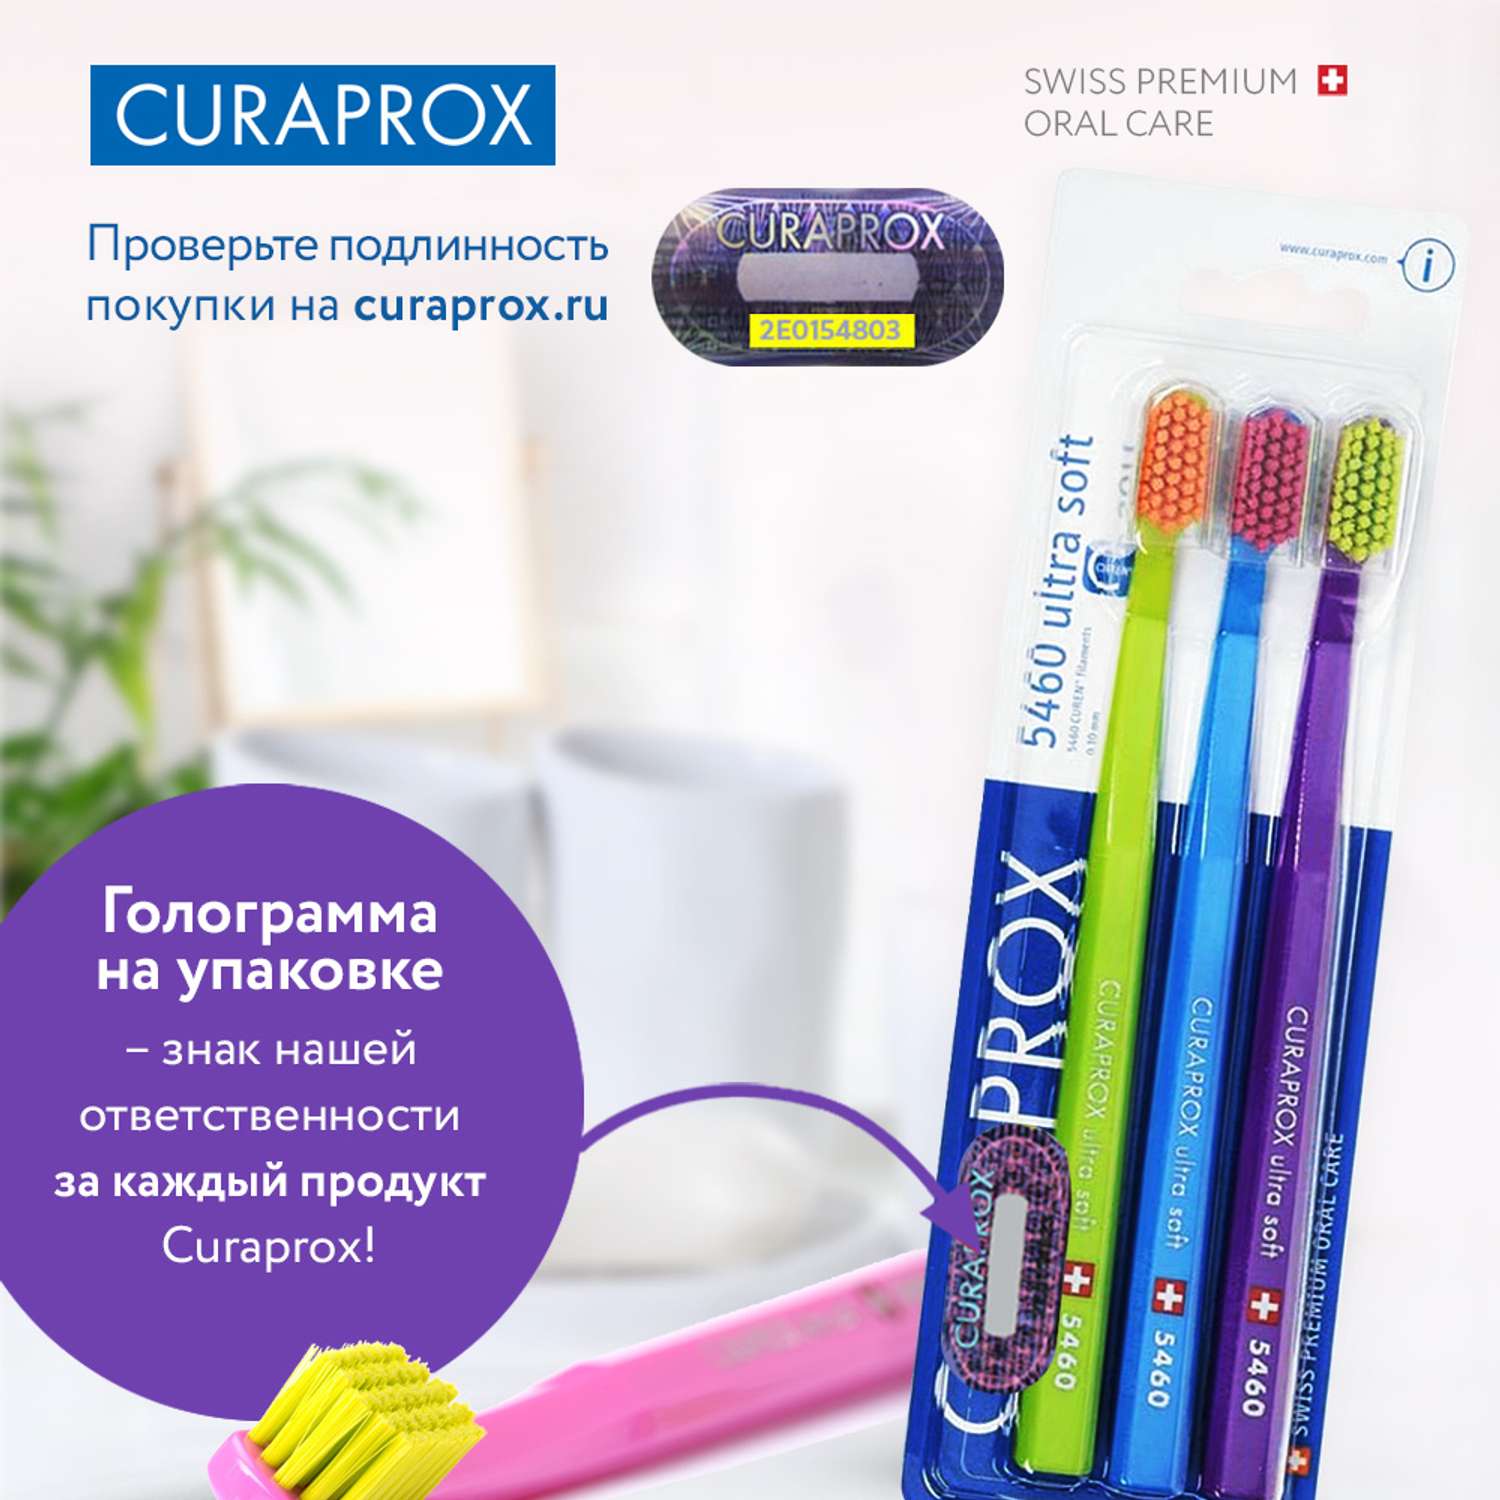 Набор зубных щеток Curaprox ultrasoft 3 шт салатовый-голубой-фиолетовый - фото 8